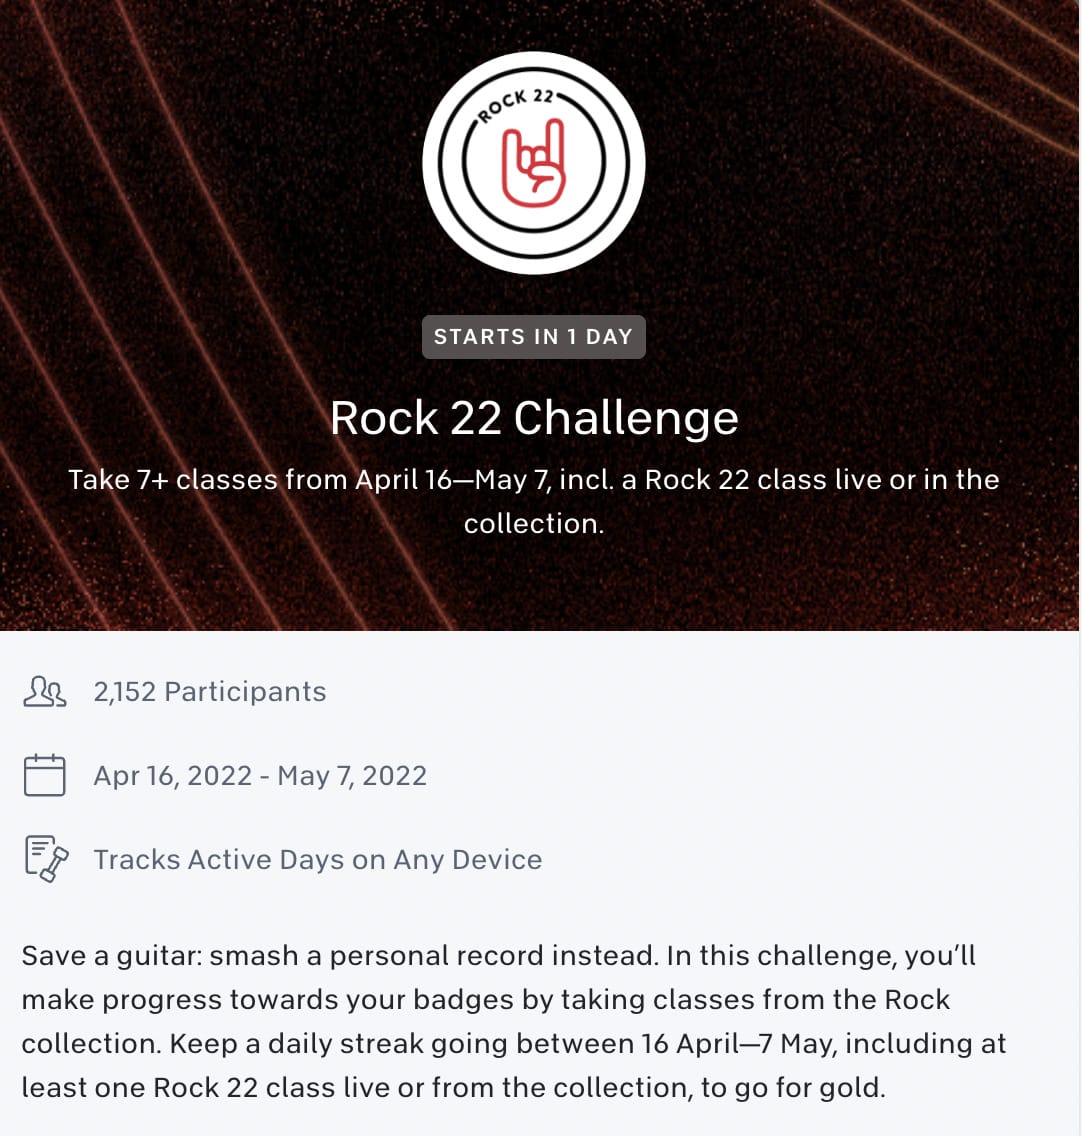 Official Rock 22 Challenge Description